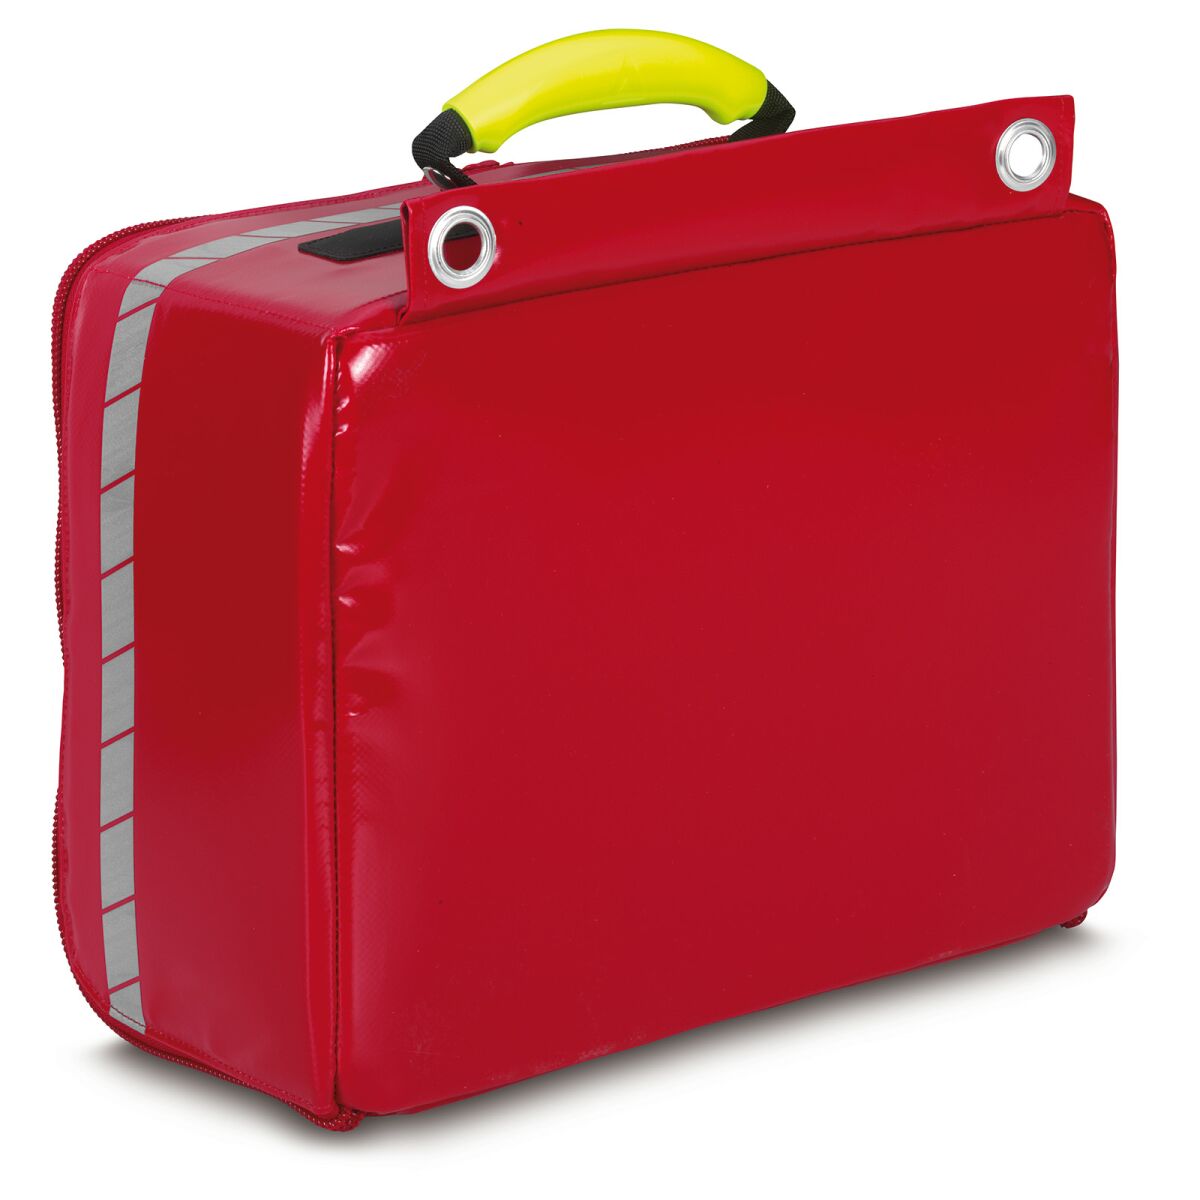 Koffer & Taschen für den Rettungsdienst kaufen •